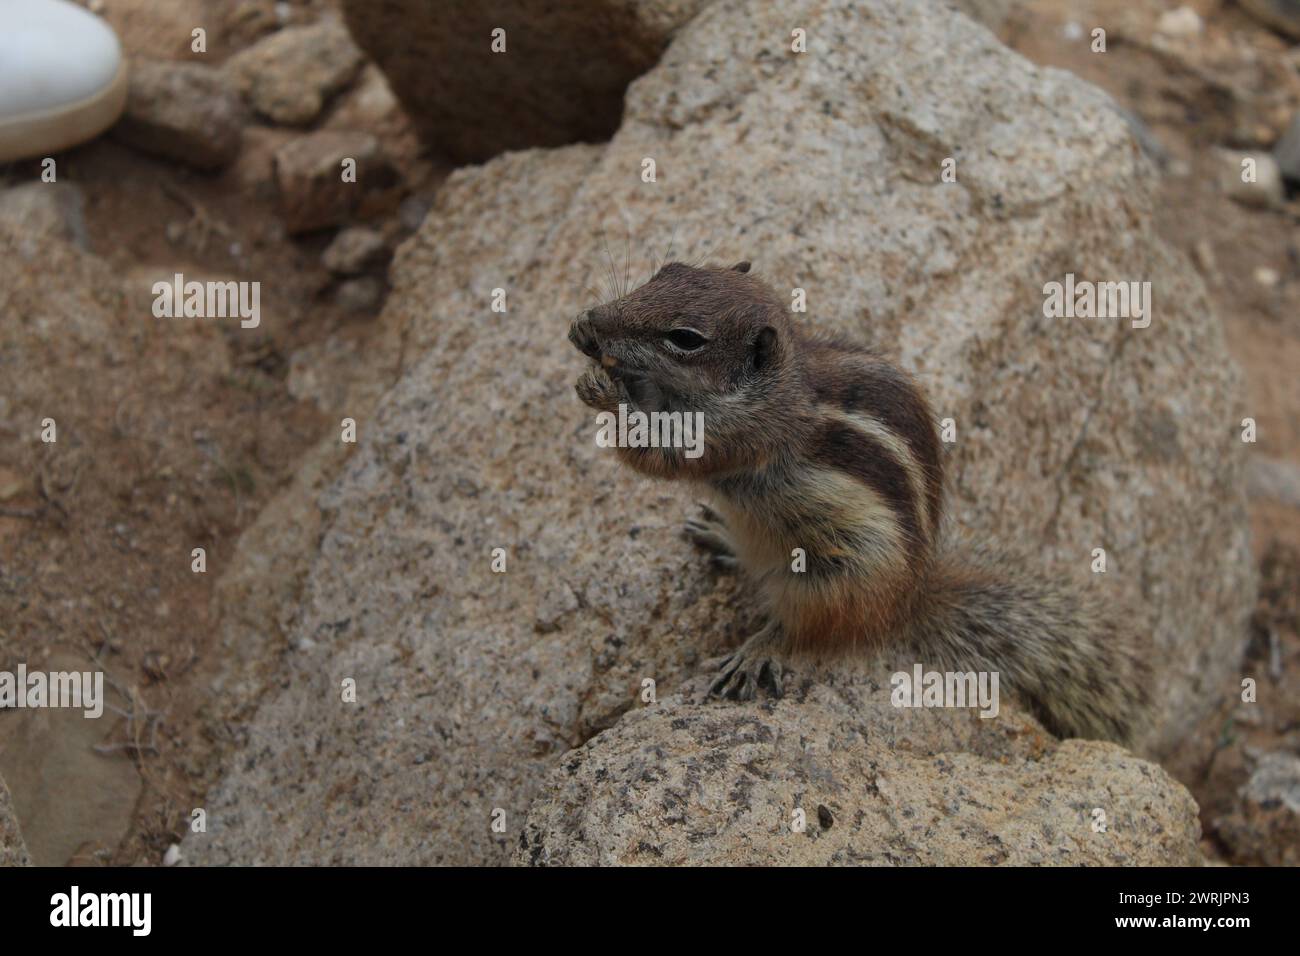 Squirrel eating, Fuerteventura, Spain Stock Photo